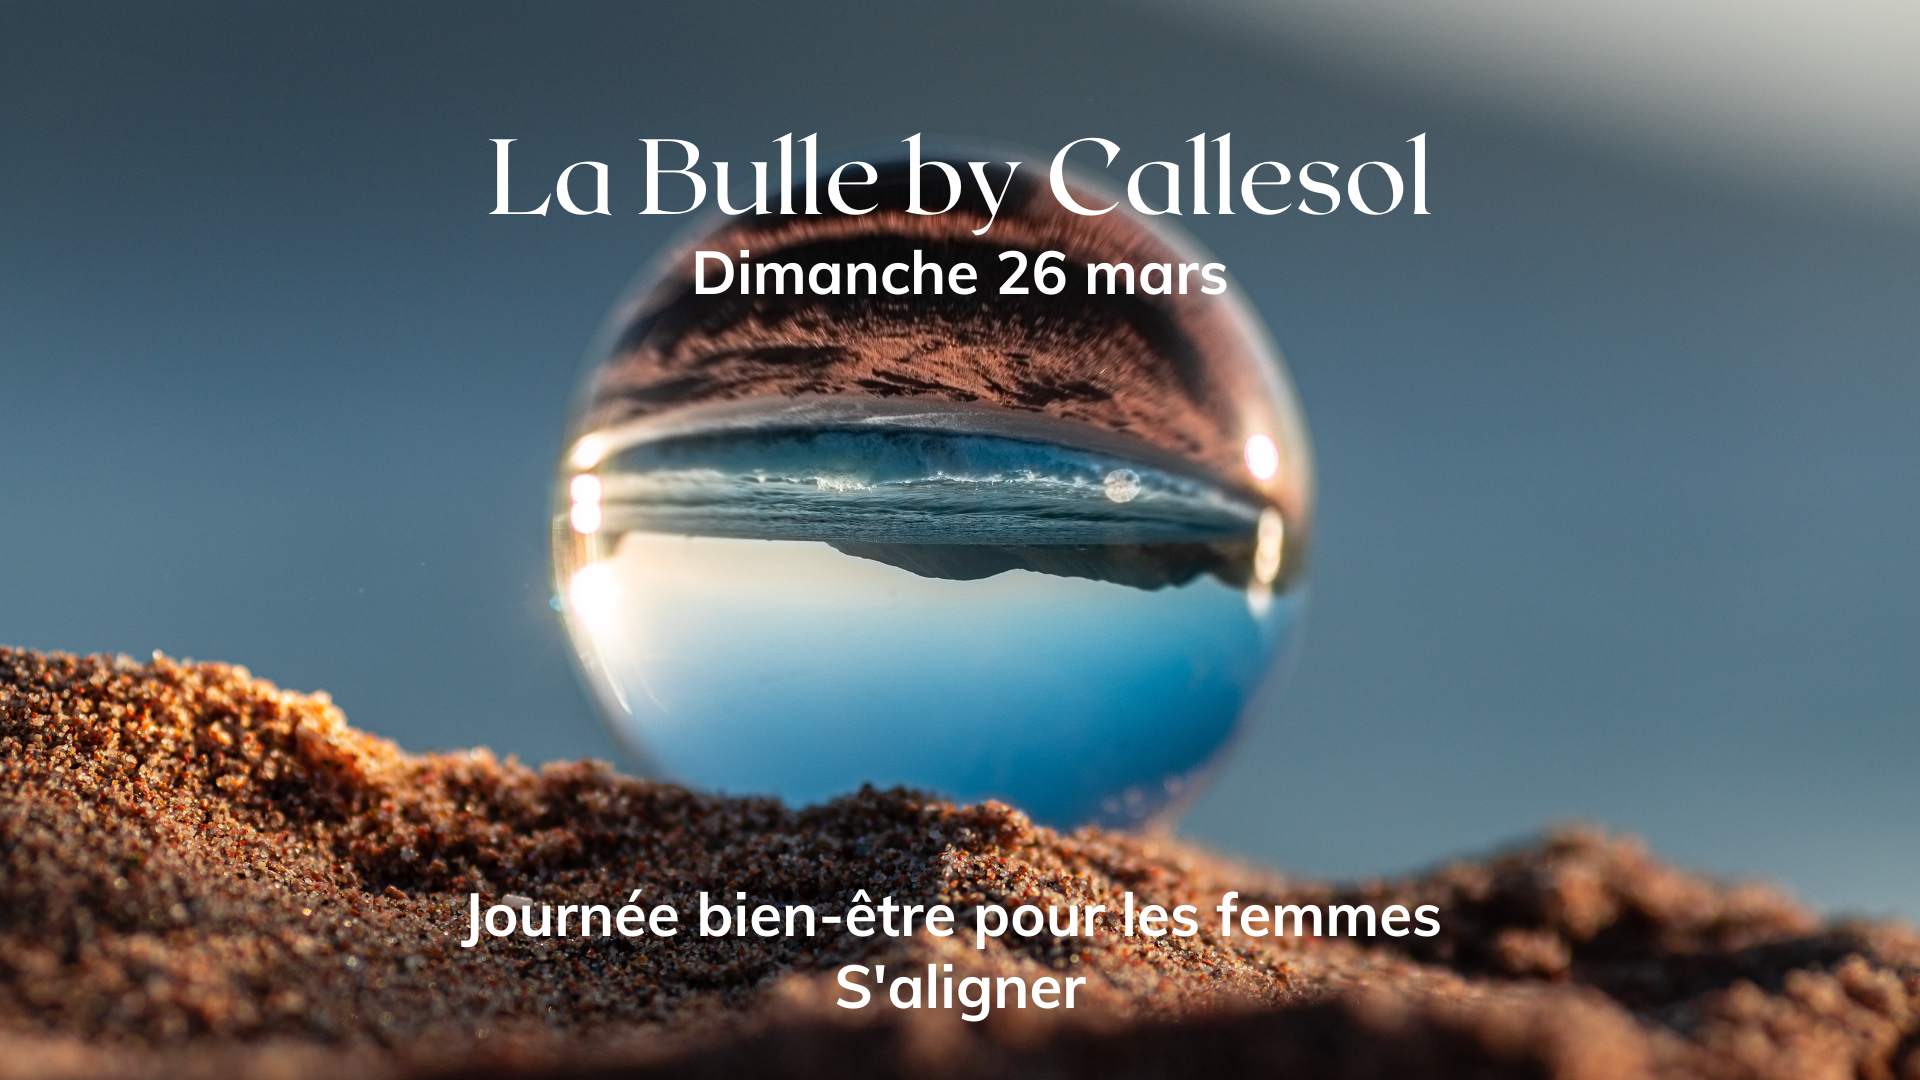 La bulle du 26 mars aura pour thème "S'aligner". La Bulle, la journée bien-être pour les femmes.